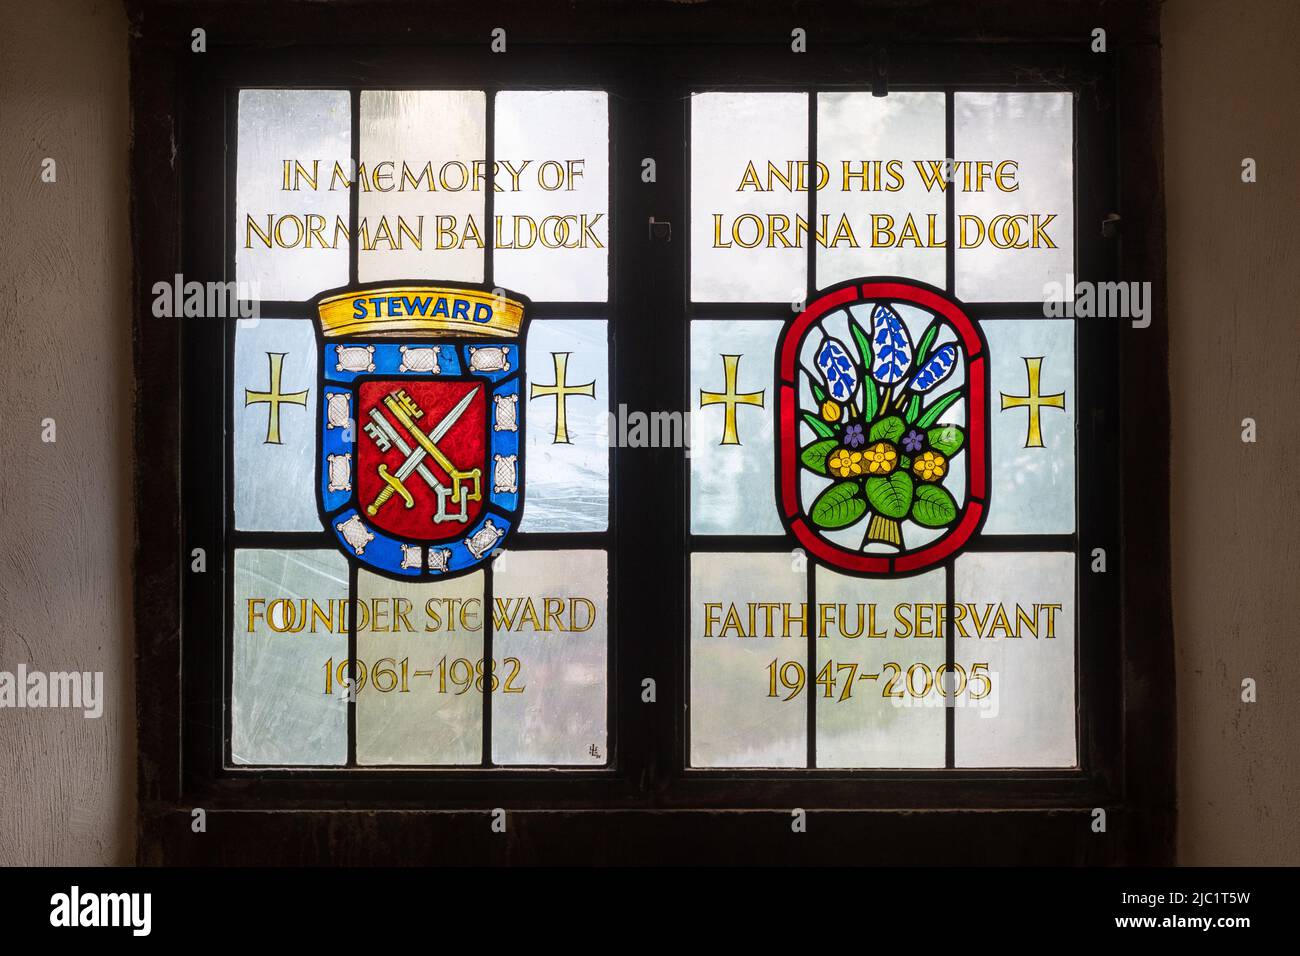 Vitraux à la mémoire de Norman Baldock et de sa femme Lorna Baldock, déléguée fondatrice de la cathédrale de Guildford, Surrey, Angleterre, Royaume-Uni Banque D'Images